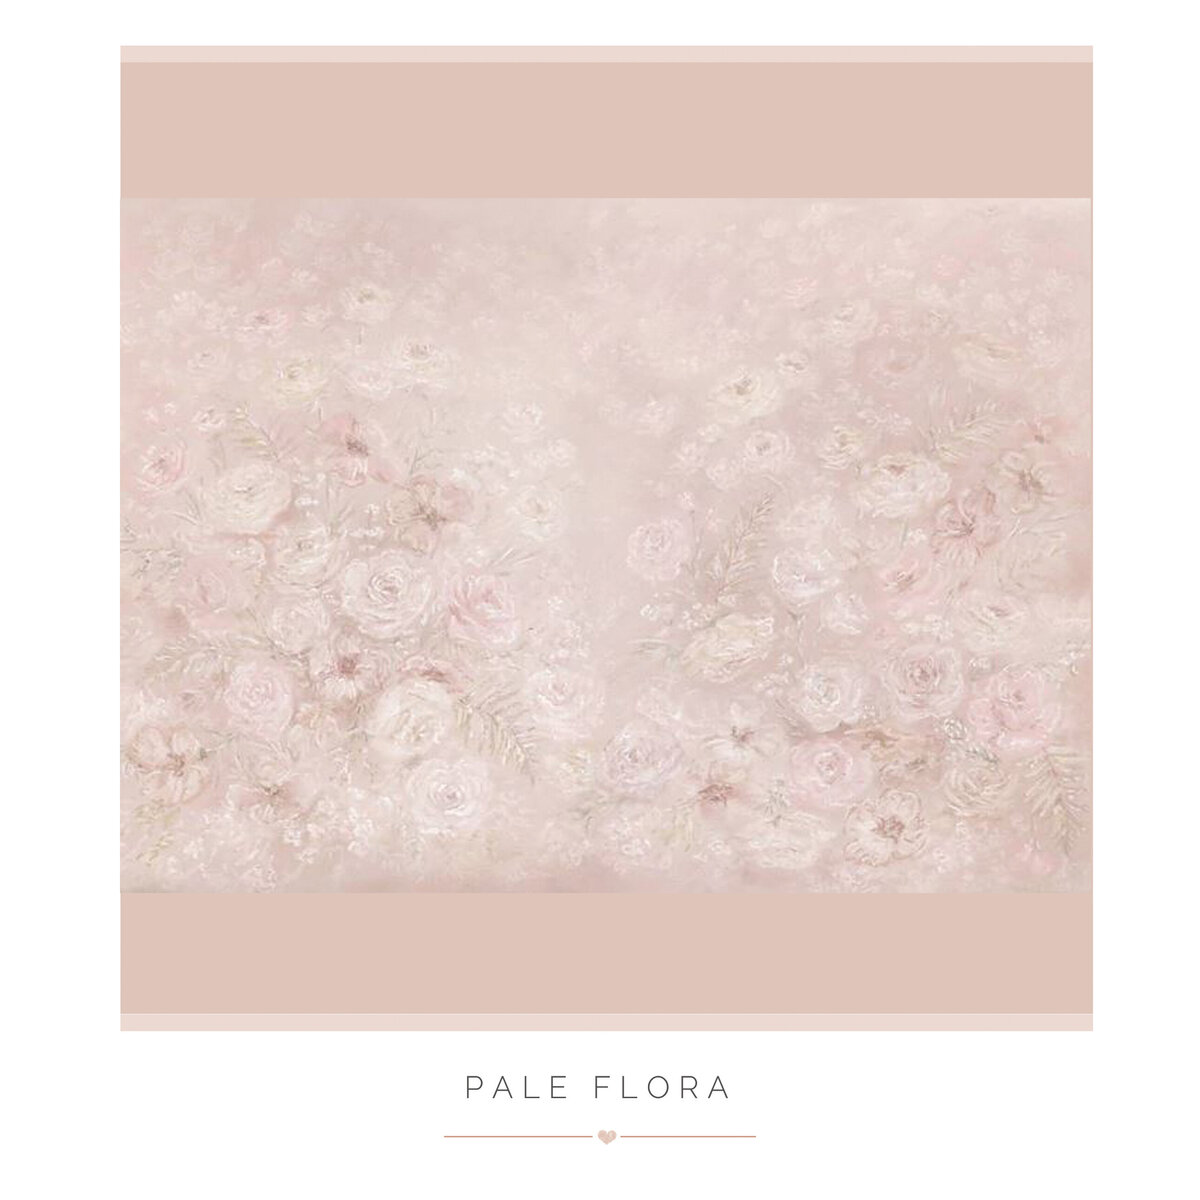 Pale Flora